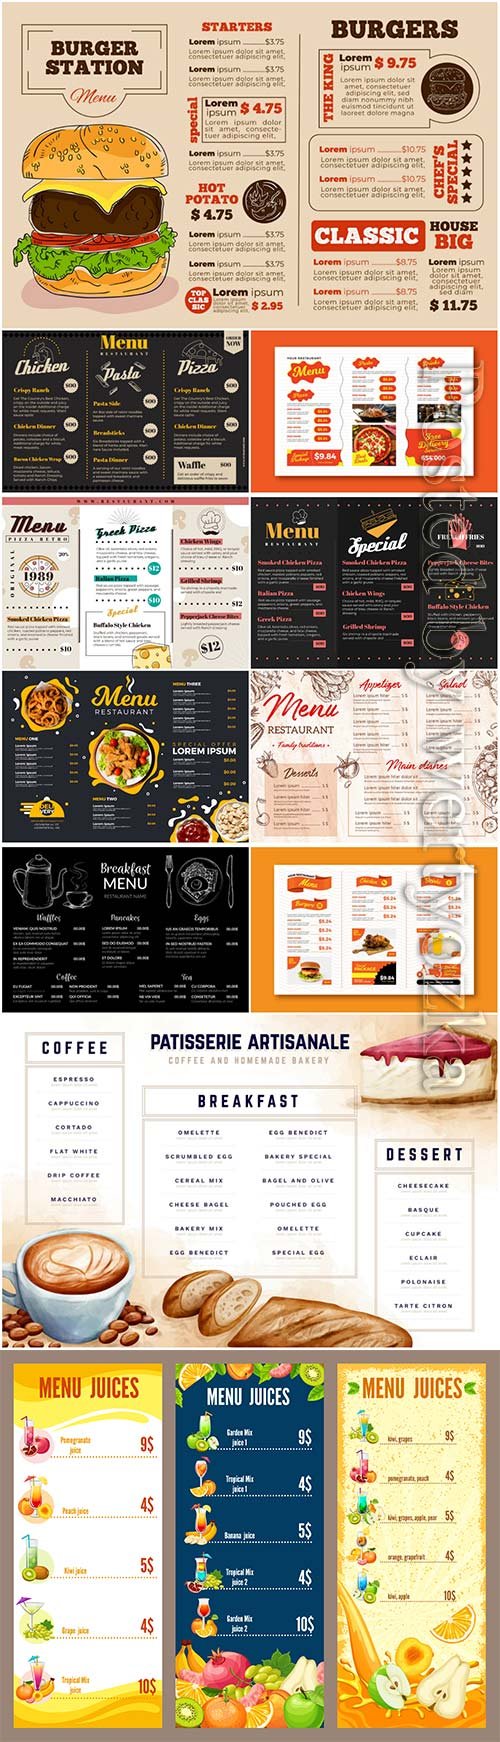 Digital restaurant menu template - Food Menu Templates - Free PSD Throughout Digital Menu Templates Free